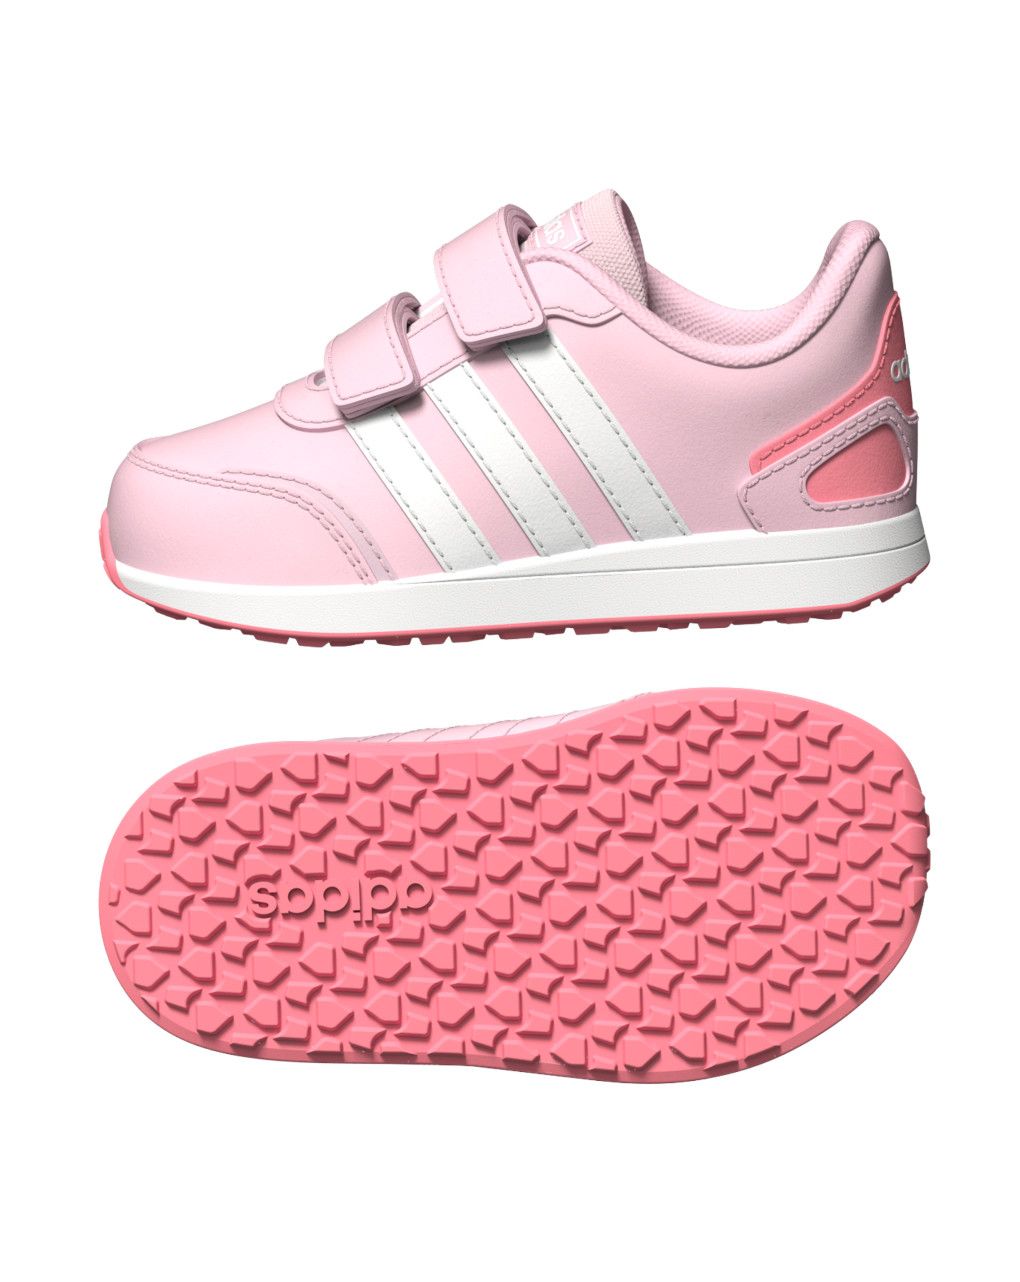 Αθλητικά Παπούτσια Adidas Vs Switch 3 I FY9227 για Κορίτσι